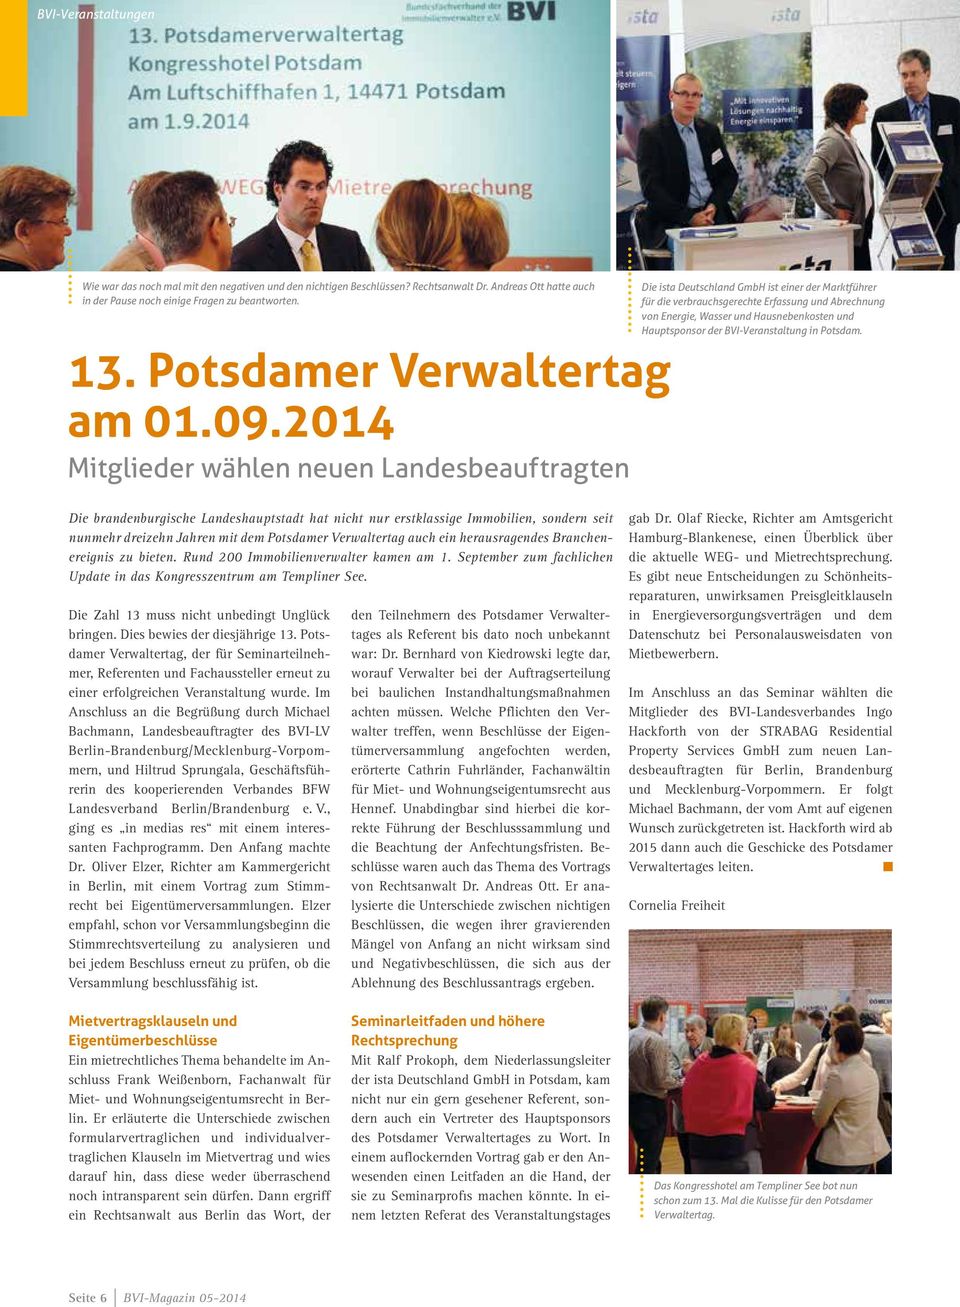 2014 Mitglieder wählen neuen Landesbeauftragten Die ista Deutschland GmbH ist einer der Marktführer für die verbrauchsgerechte Erfassung und Abrechnung von Energie, Wasser und Hausnebenkosten und